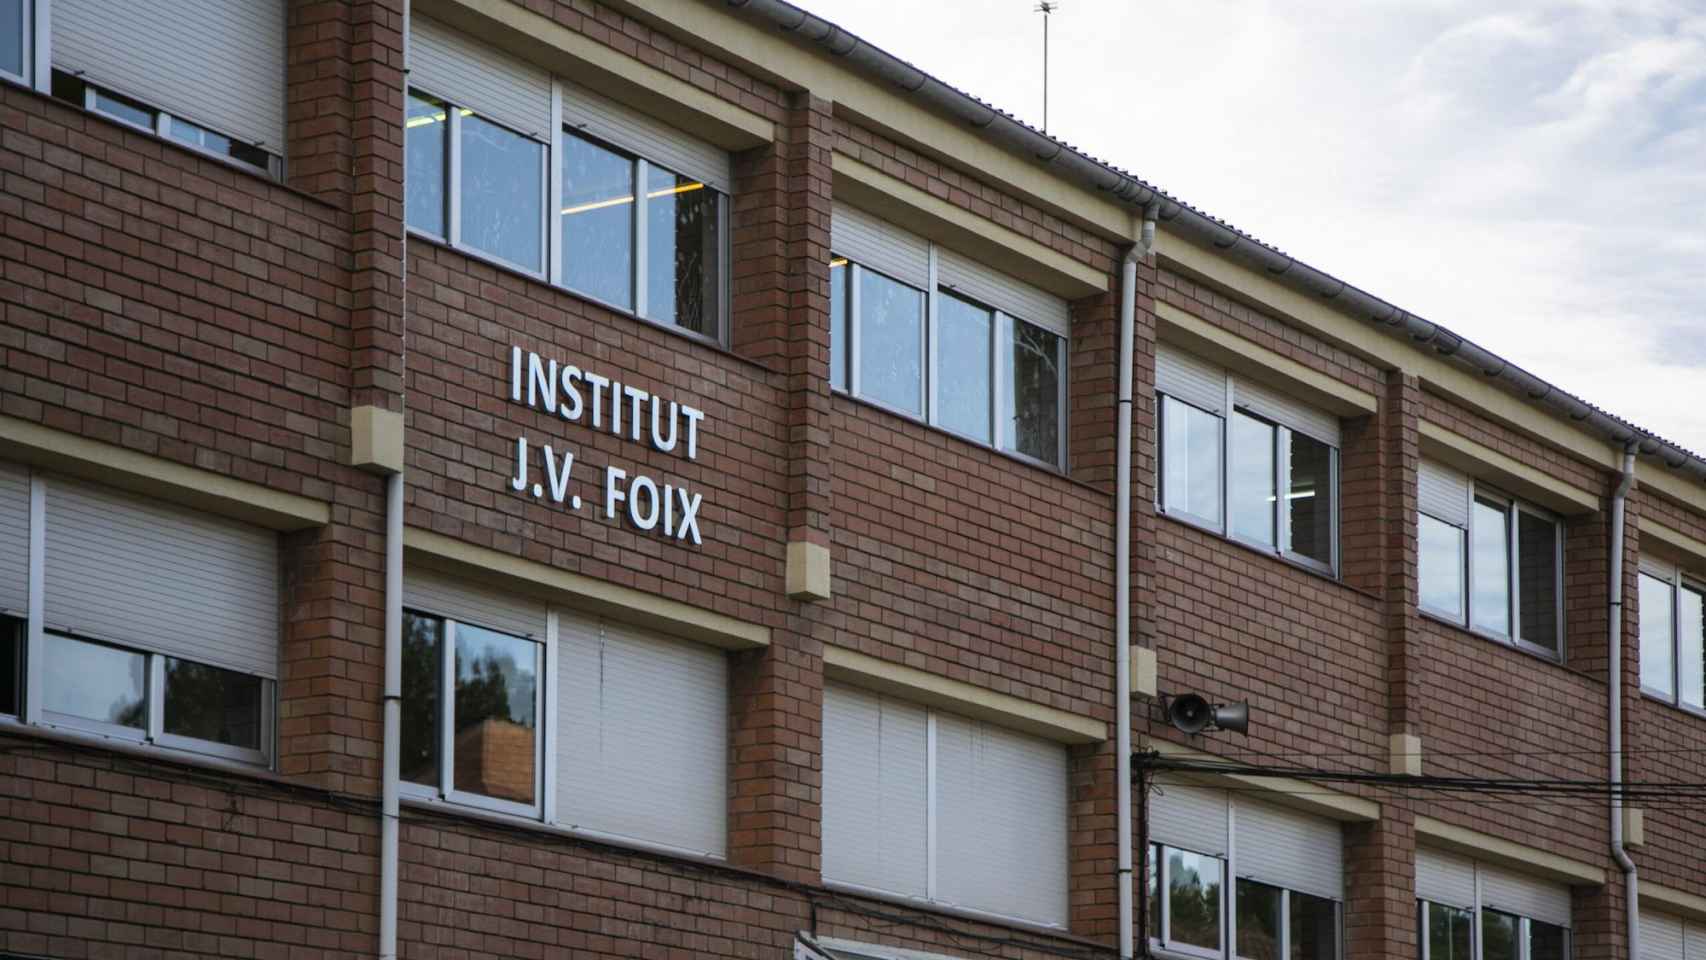 Imagen exterior del Institut J.V. Foix de Rubí, donde estudia la joven herida / INSTITUT J.V. FOIX